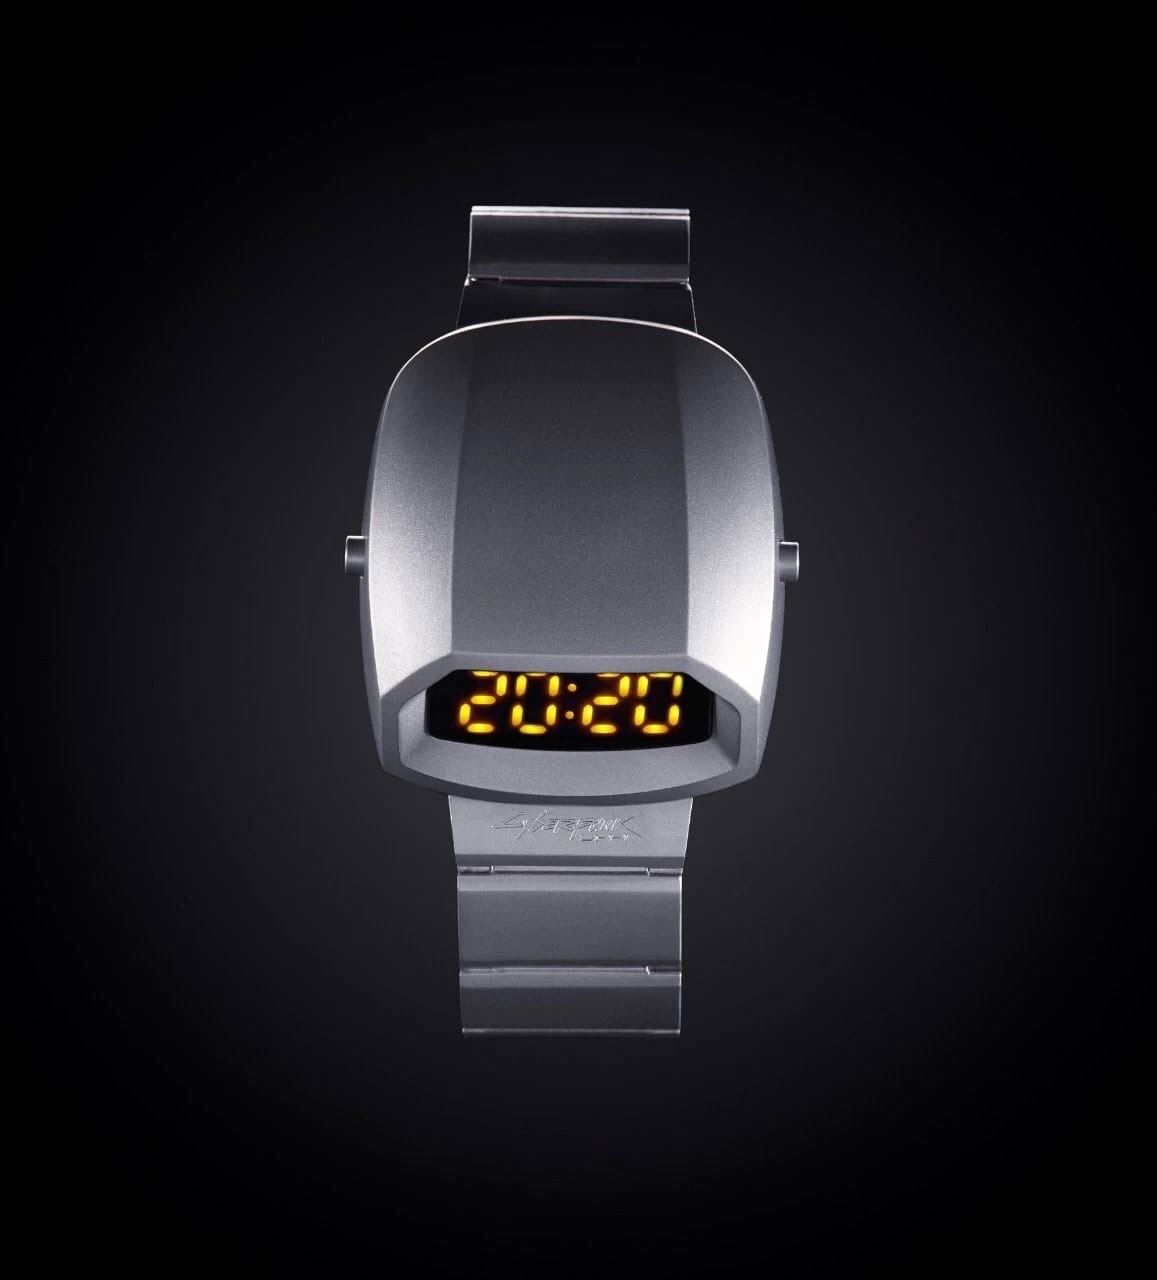 Студия CD Projekt RED выпустила часы в стилистике Cyperpunk 2077 - T-2077.